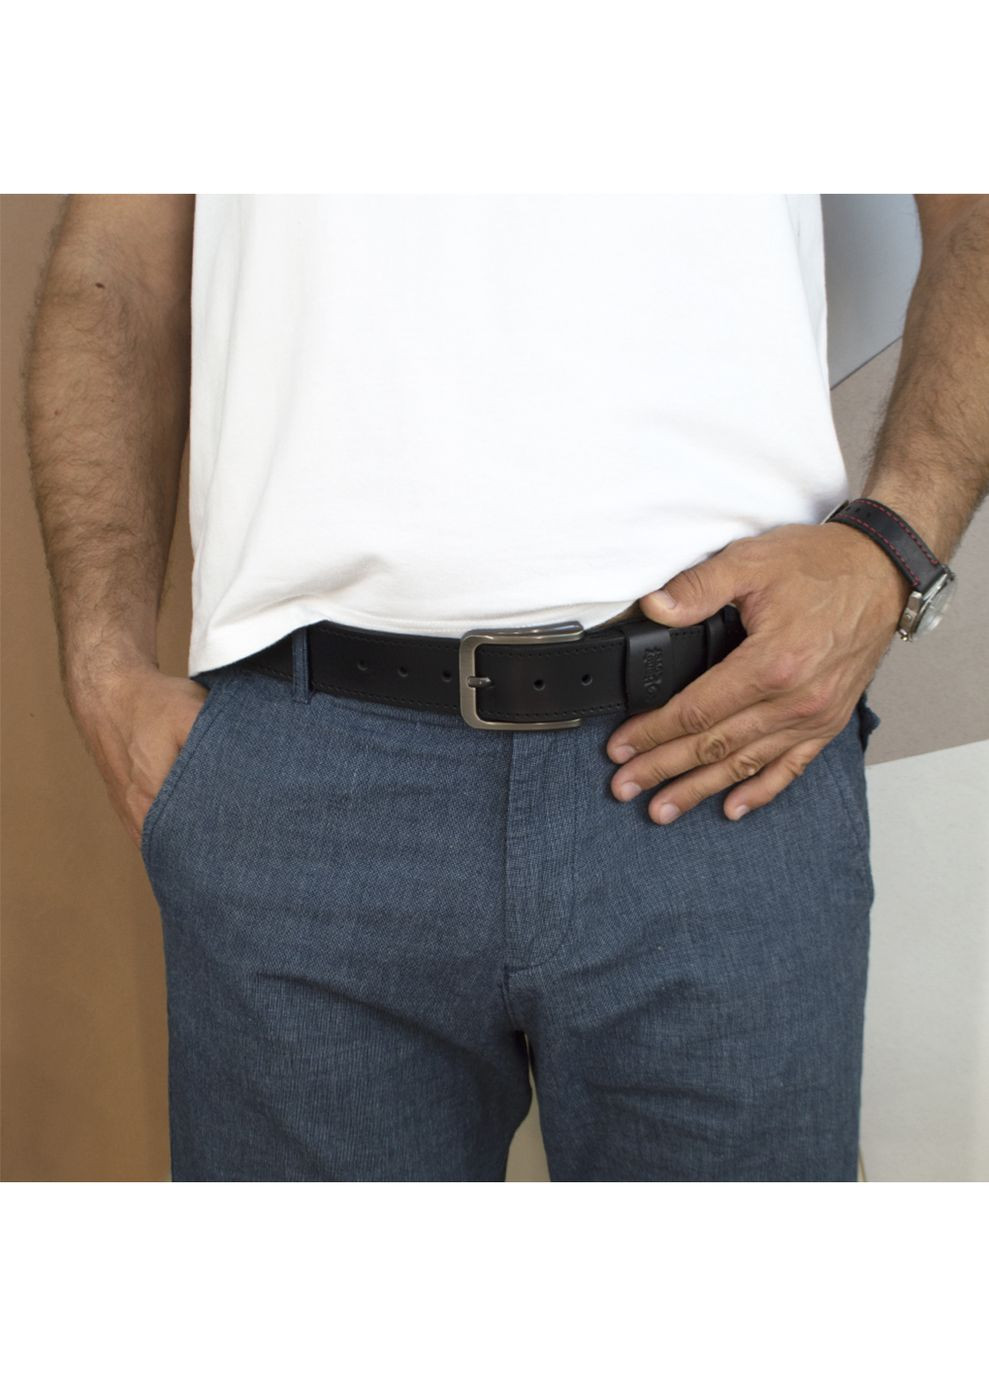 Ремень мужской кожаный со строчкой HC0072 черный (130 см) HandyCover (264197168)